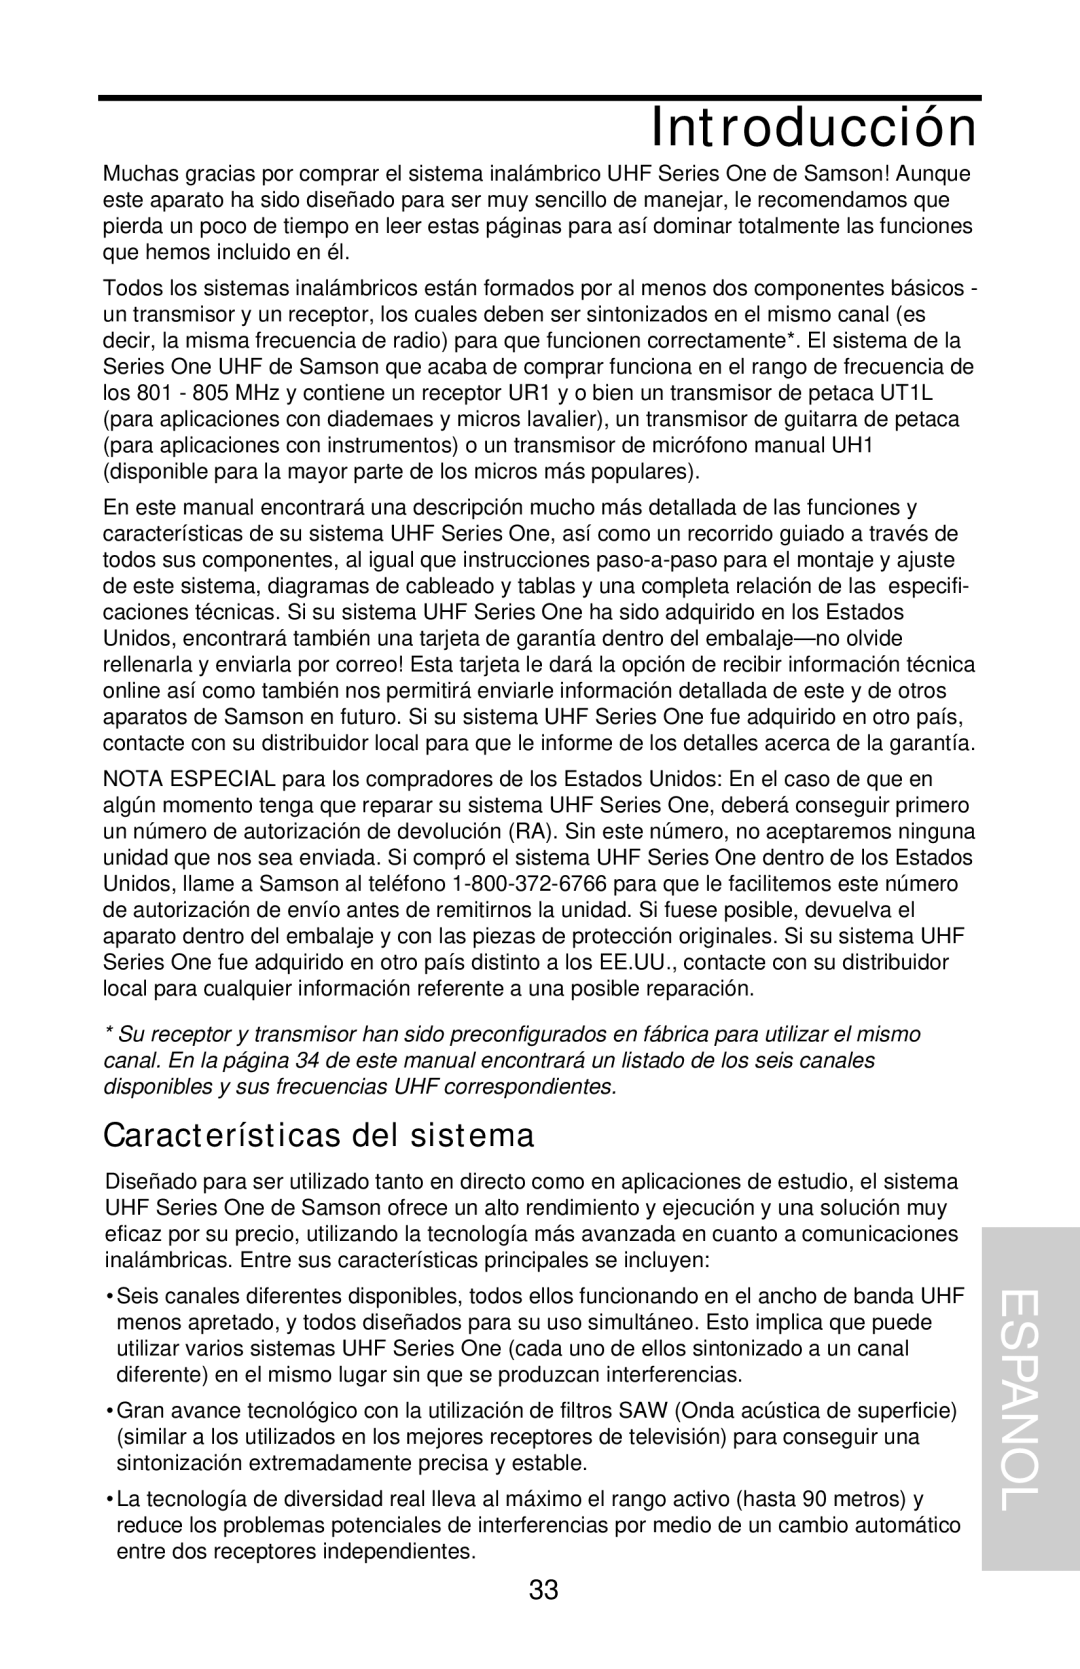 Samson UHF 801 owner manual Introducción, Espanol, Características del sistema 